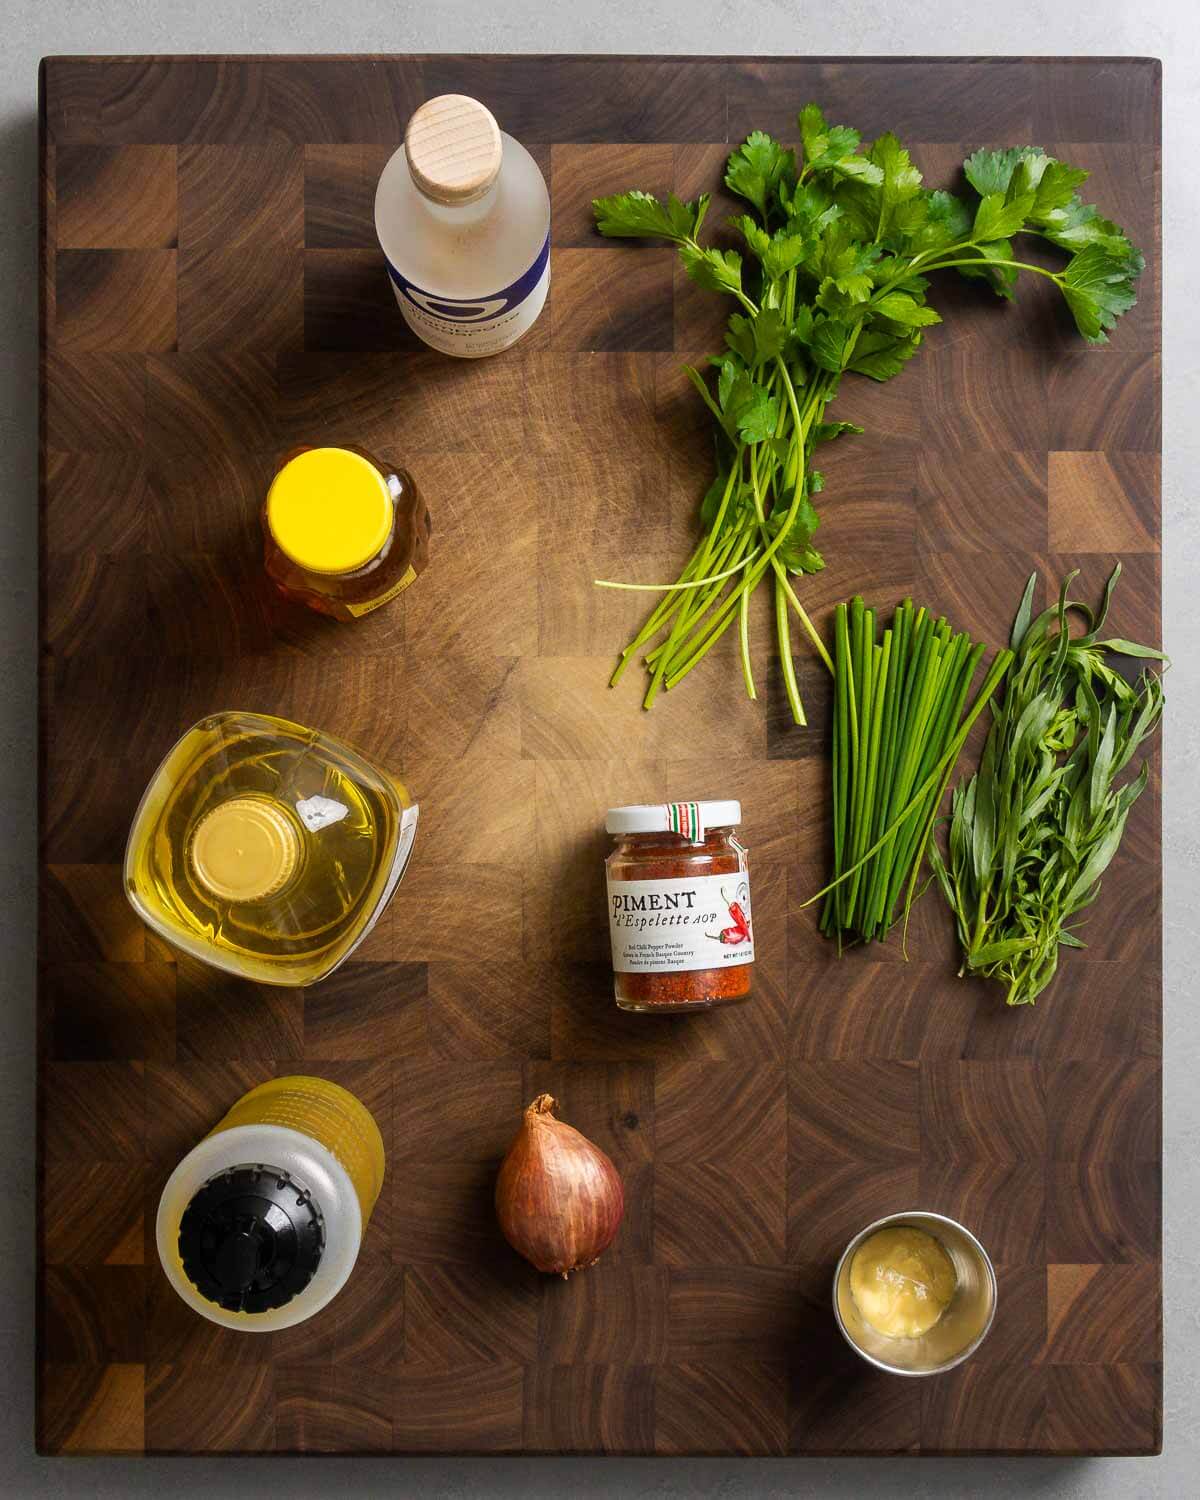 Ingredients shown: champagne vinegar, honey, sunflower oil, olive oil, Piment d'Espelette, shallot, Dijon mustard, parsley, chives, and tarragon.